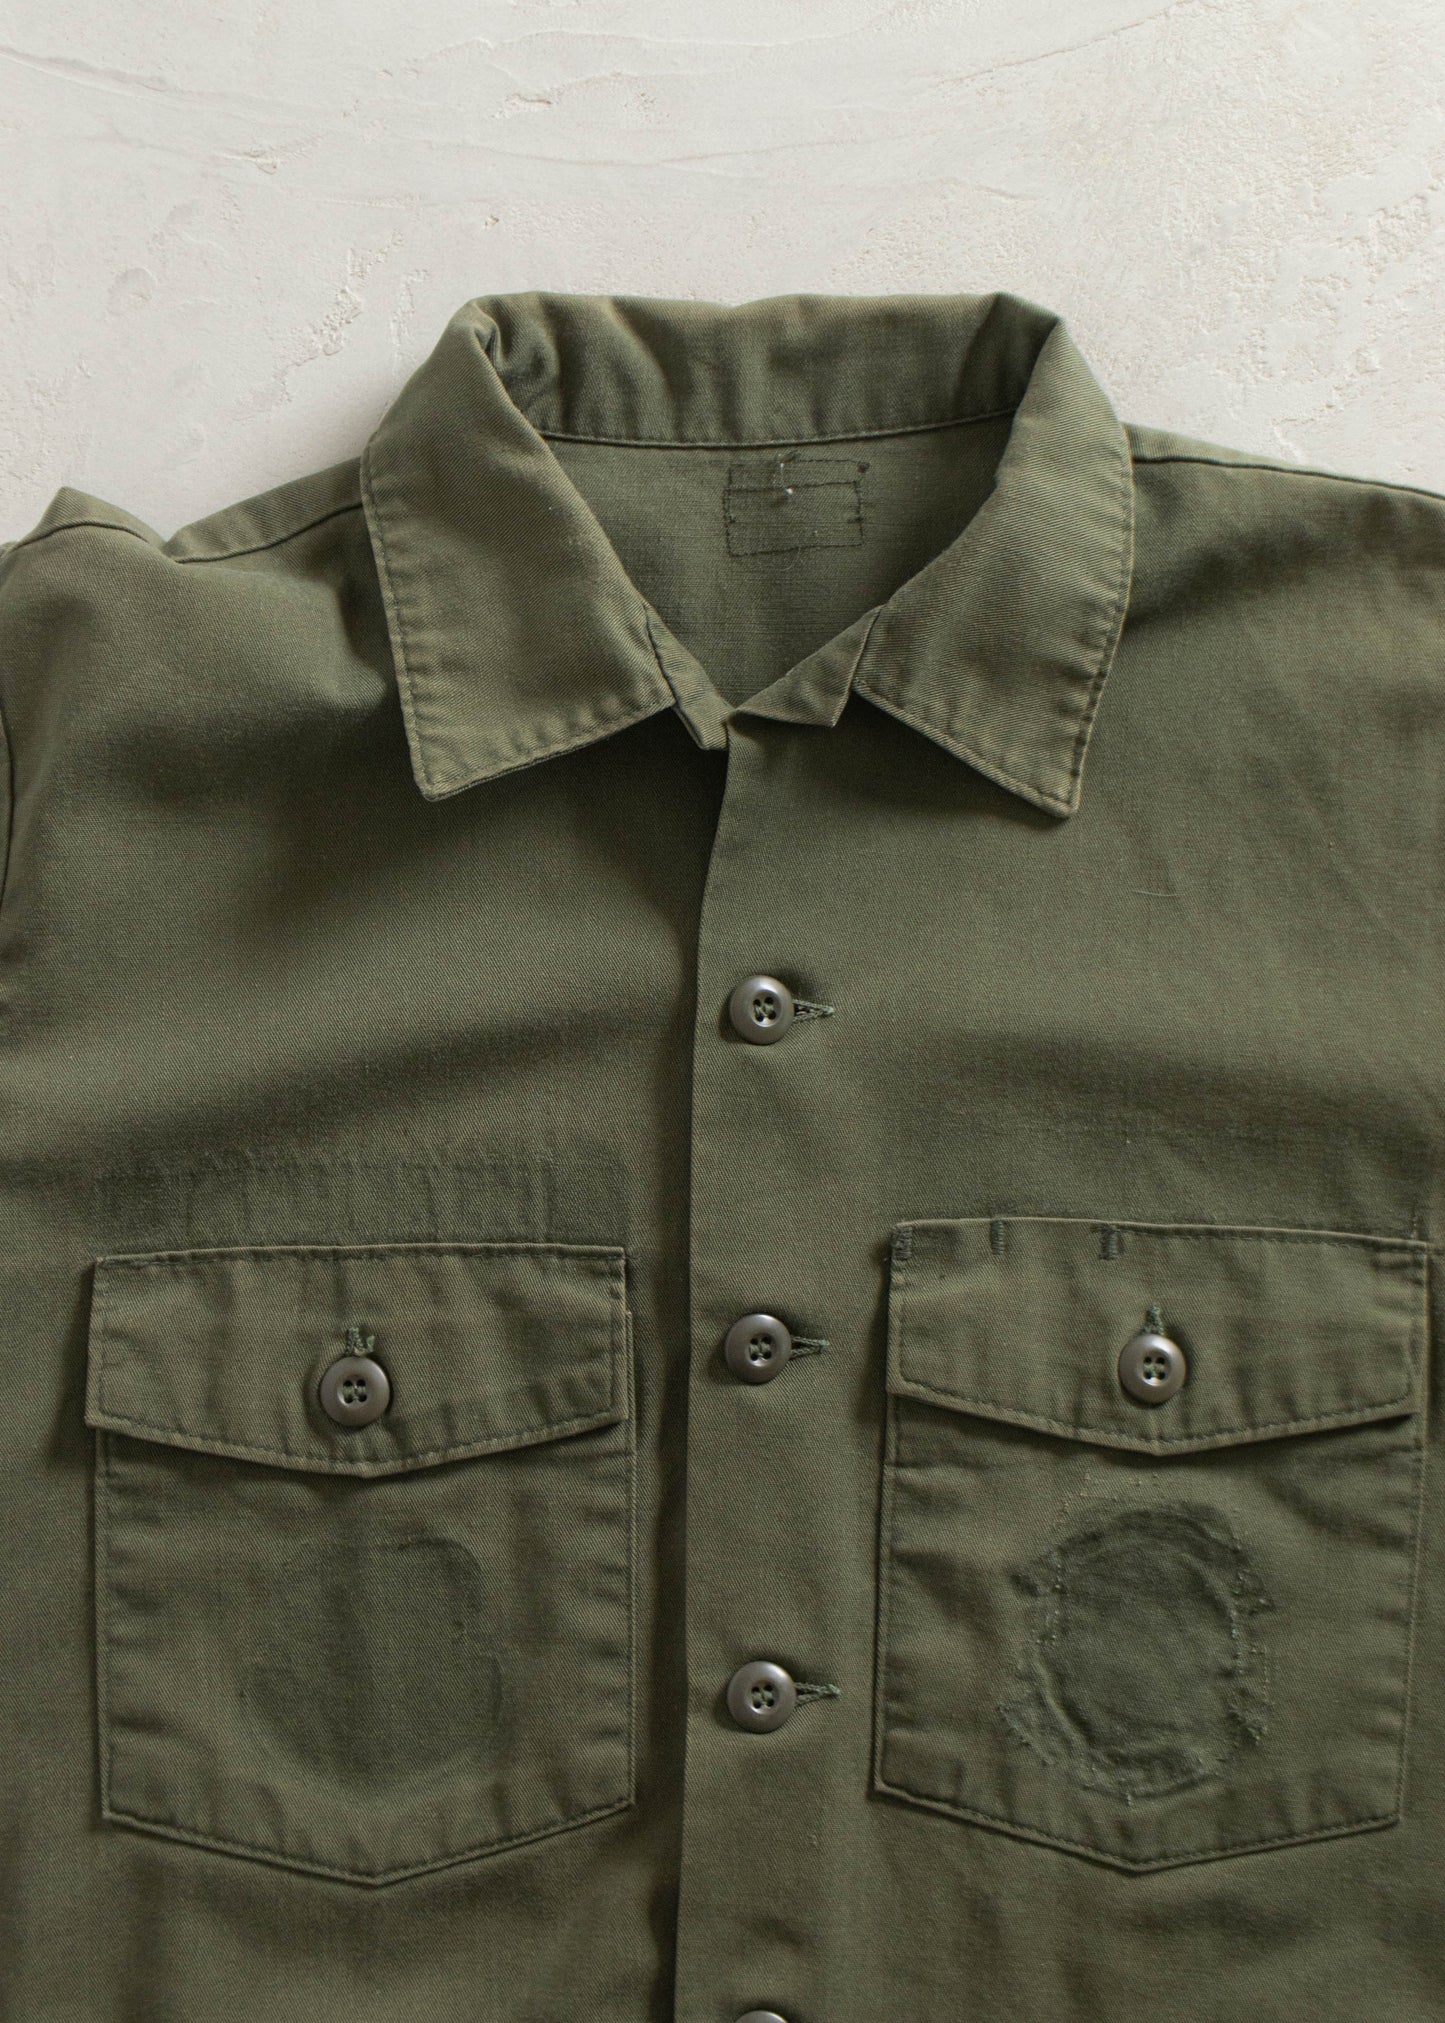 Vintage 1980s OG 507 Short Sleeve Button Up Shirt Size S/M